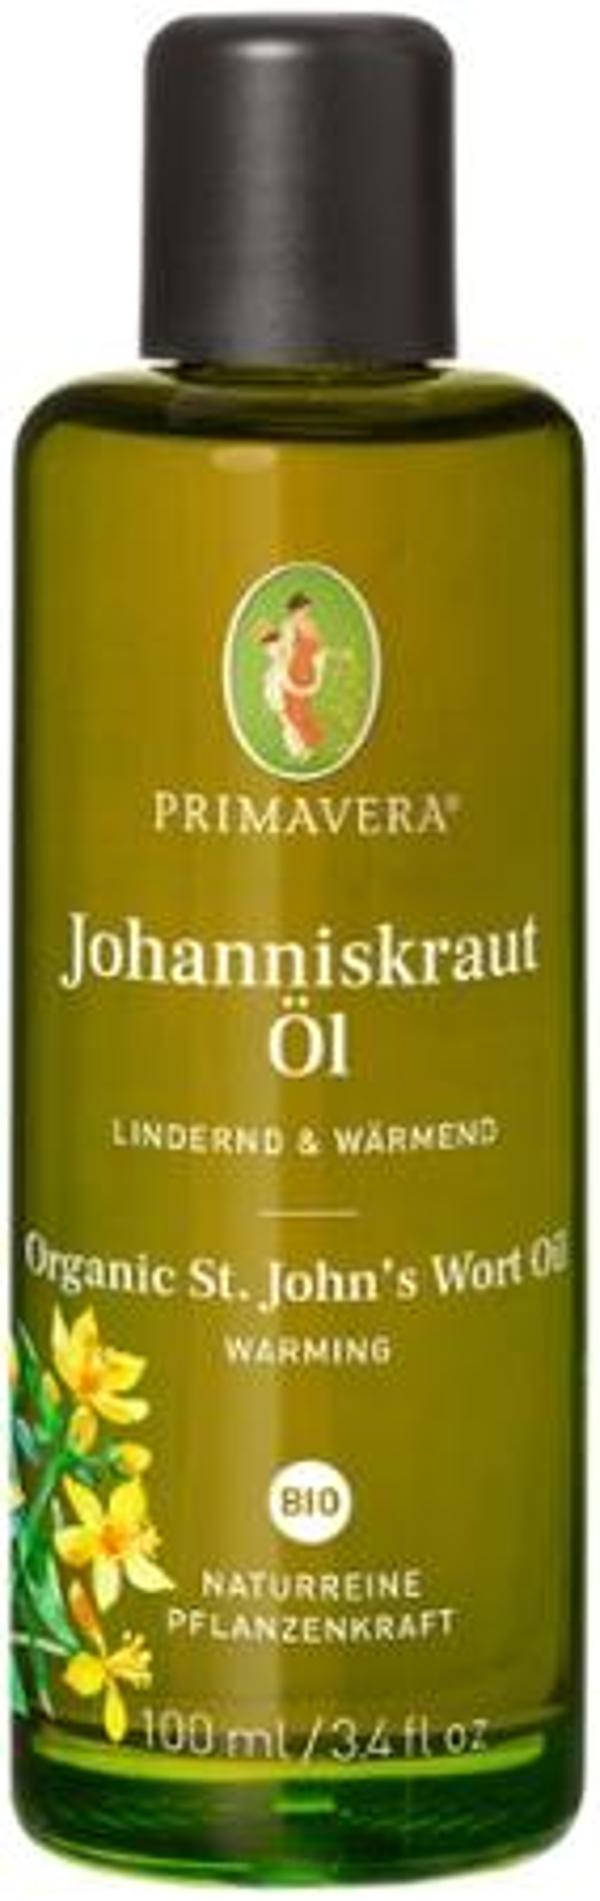 Produktfoto zu Johanniskraut Pflegeöl 100 ml